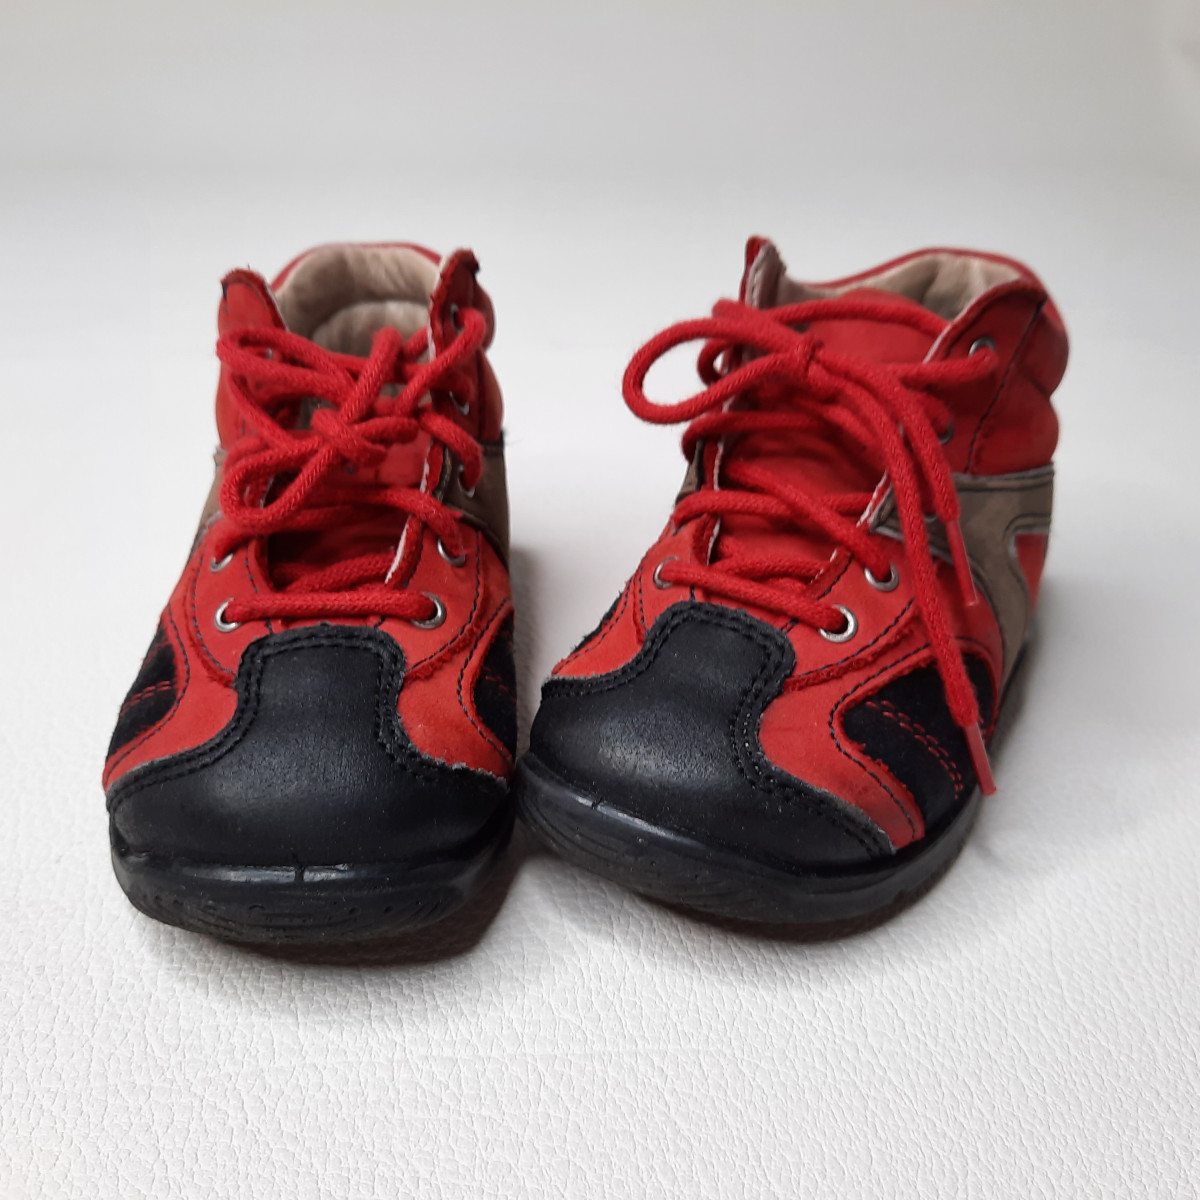 Chaussure rouge et noire P19 - Boutique Toup'tibou - photo 6